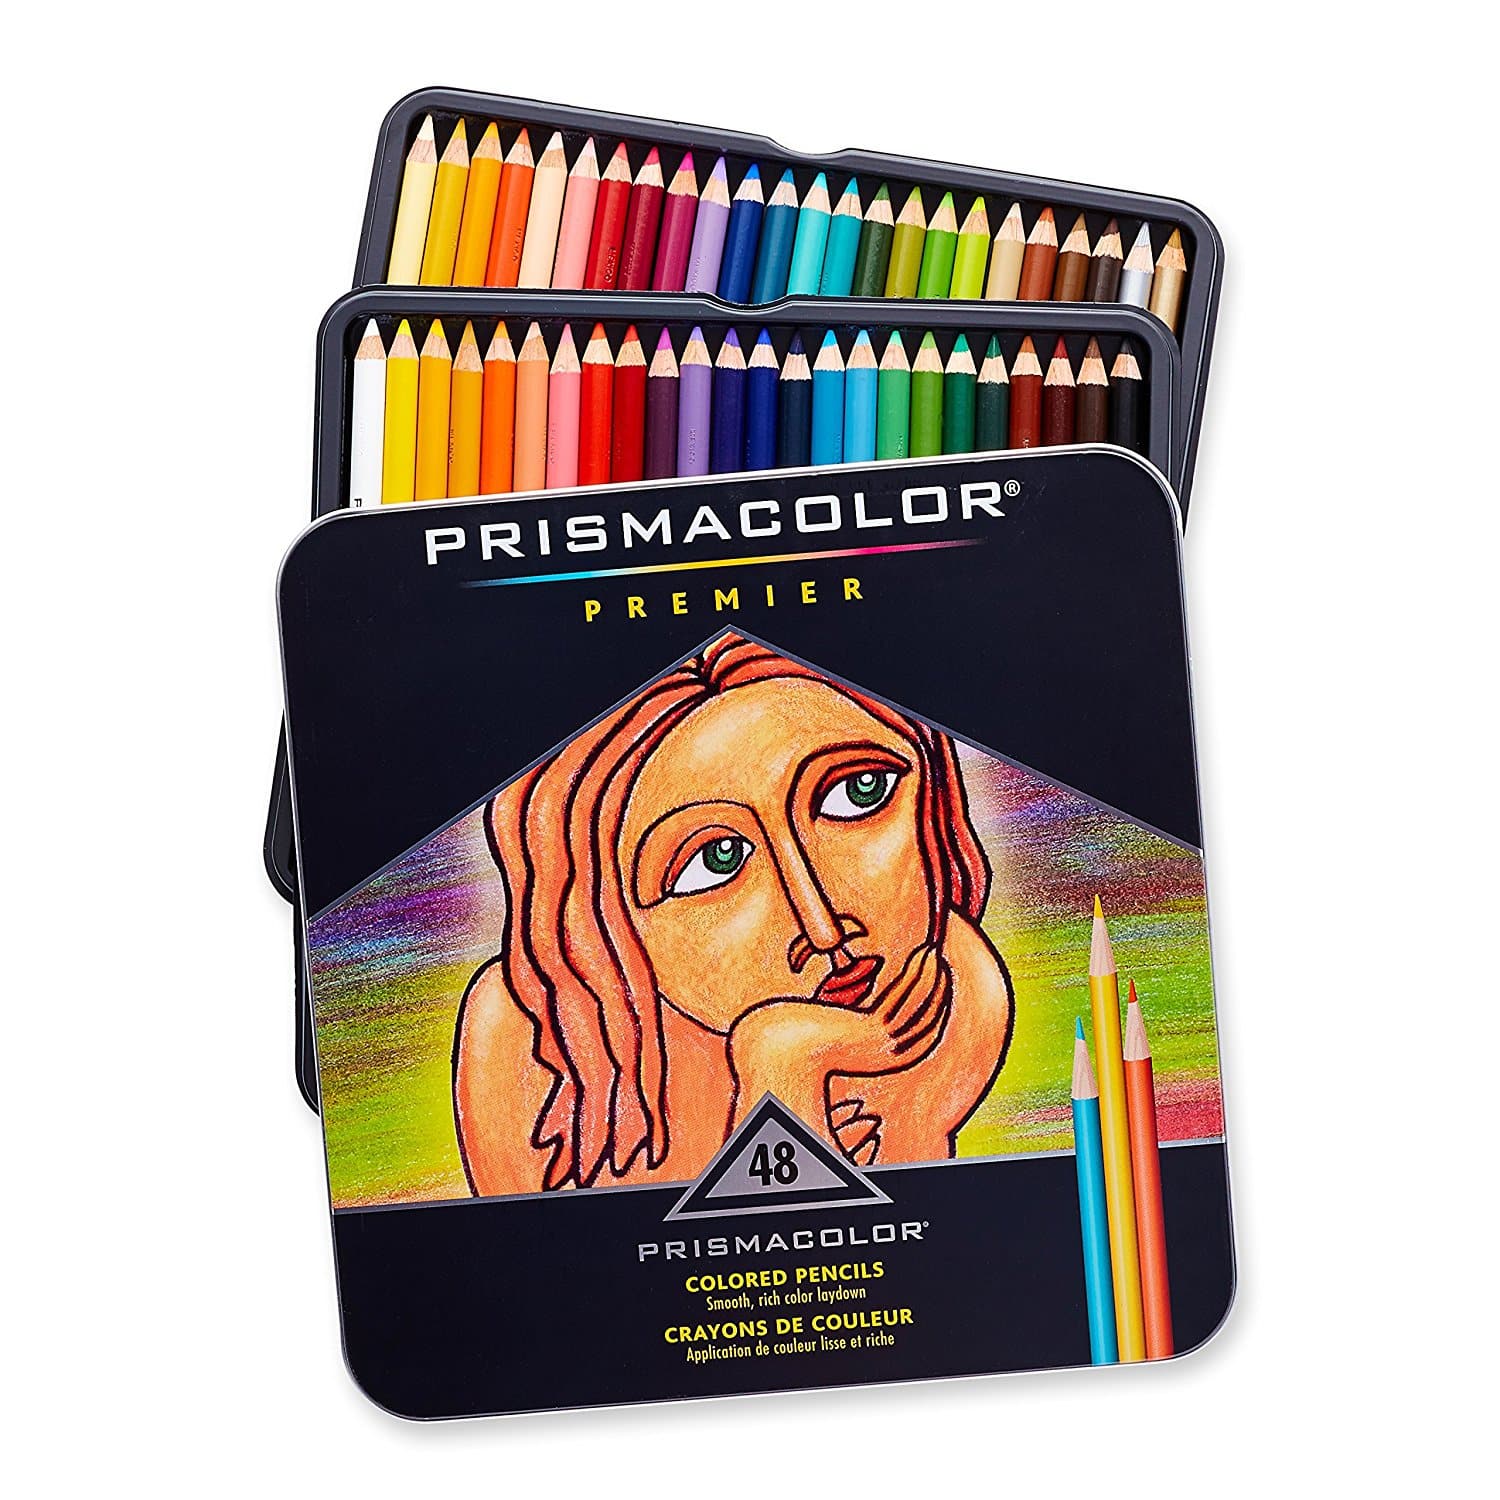 LIGHTNING DEAL ALERT! Prismacolor Premier Colored Pencils, Soft Core, 48-Count